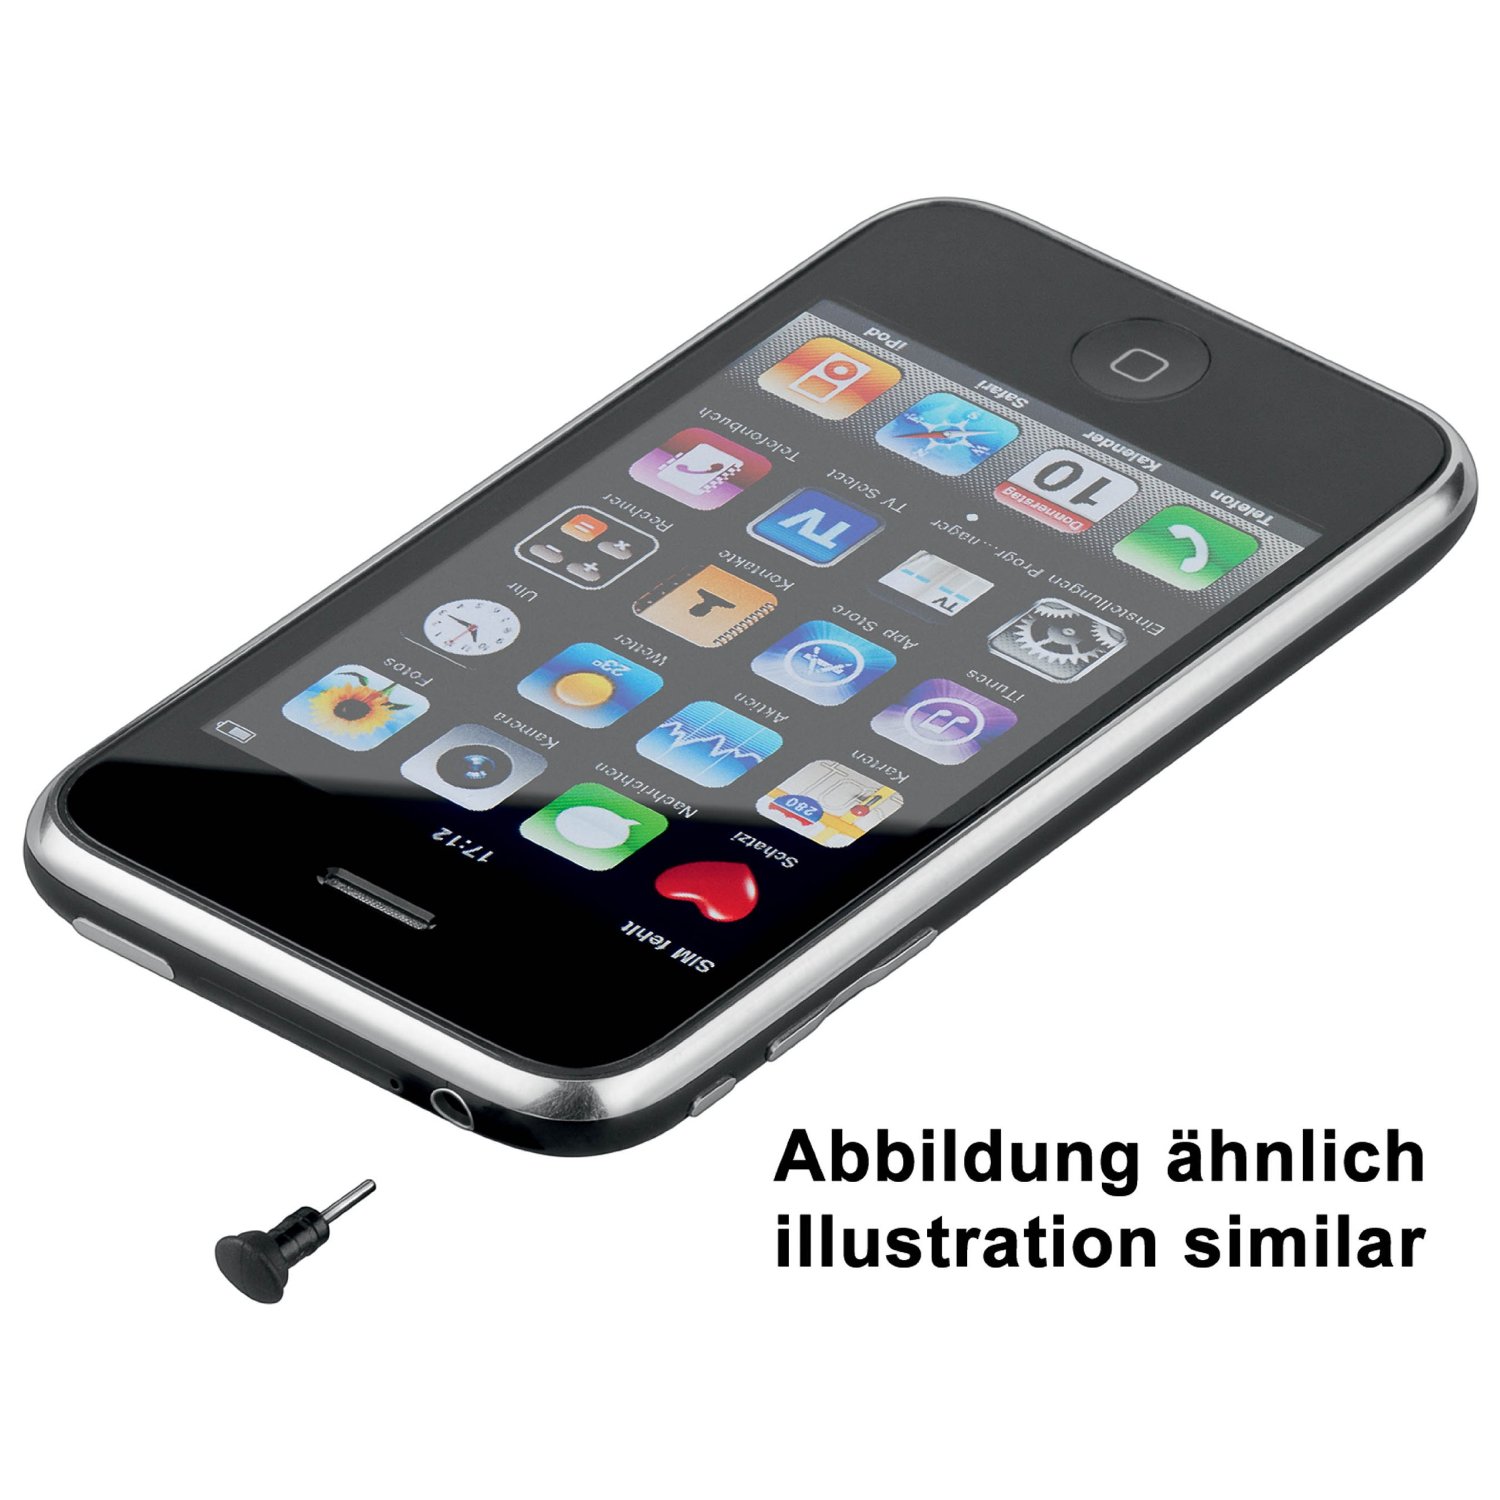 Staubschutzkappen für iPhone 4 / iPhone 4s / iPad, für Audioeingang und Ladebuchse, schwarz